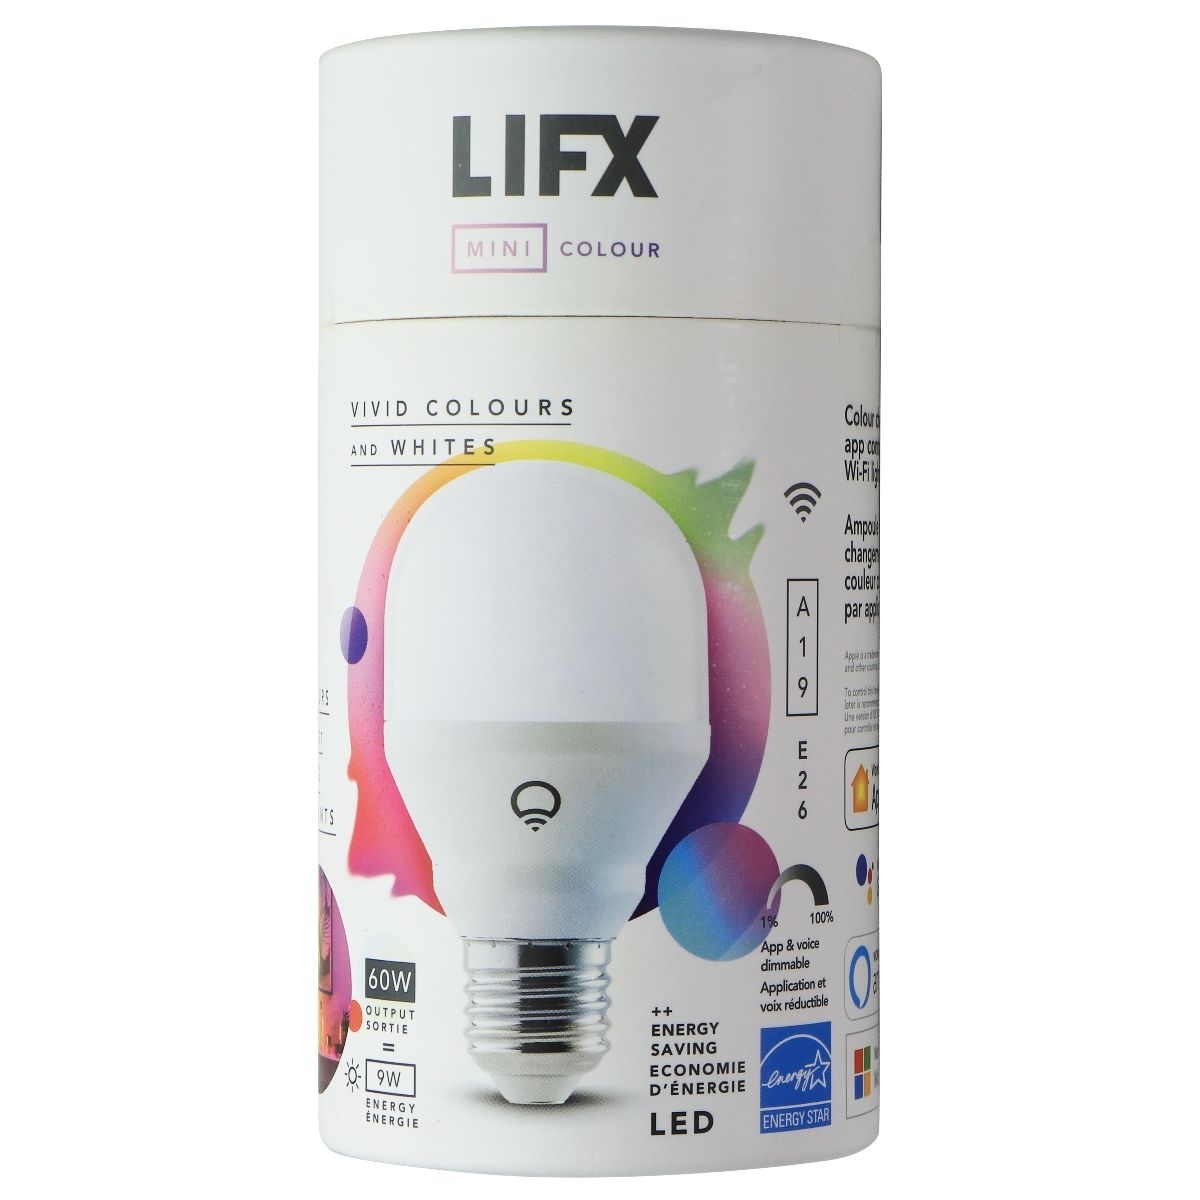 LIFX Mini Colour - Vivid Colours And Whites (60W) LED Bulb (Refurbished)